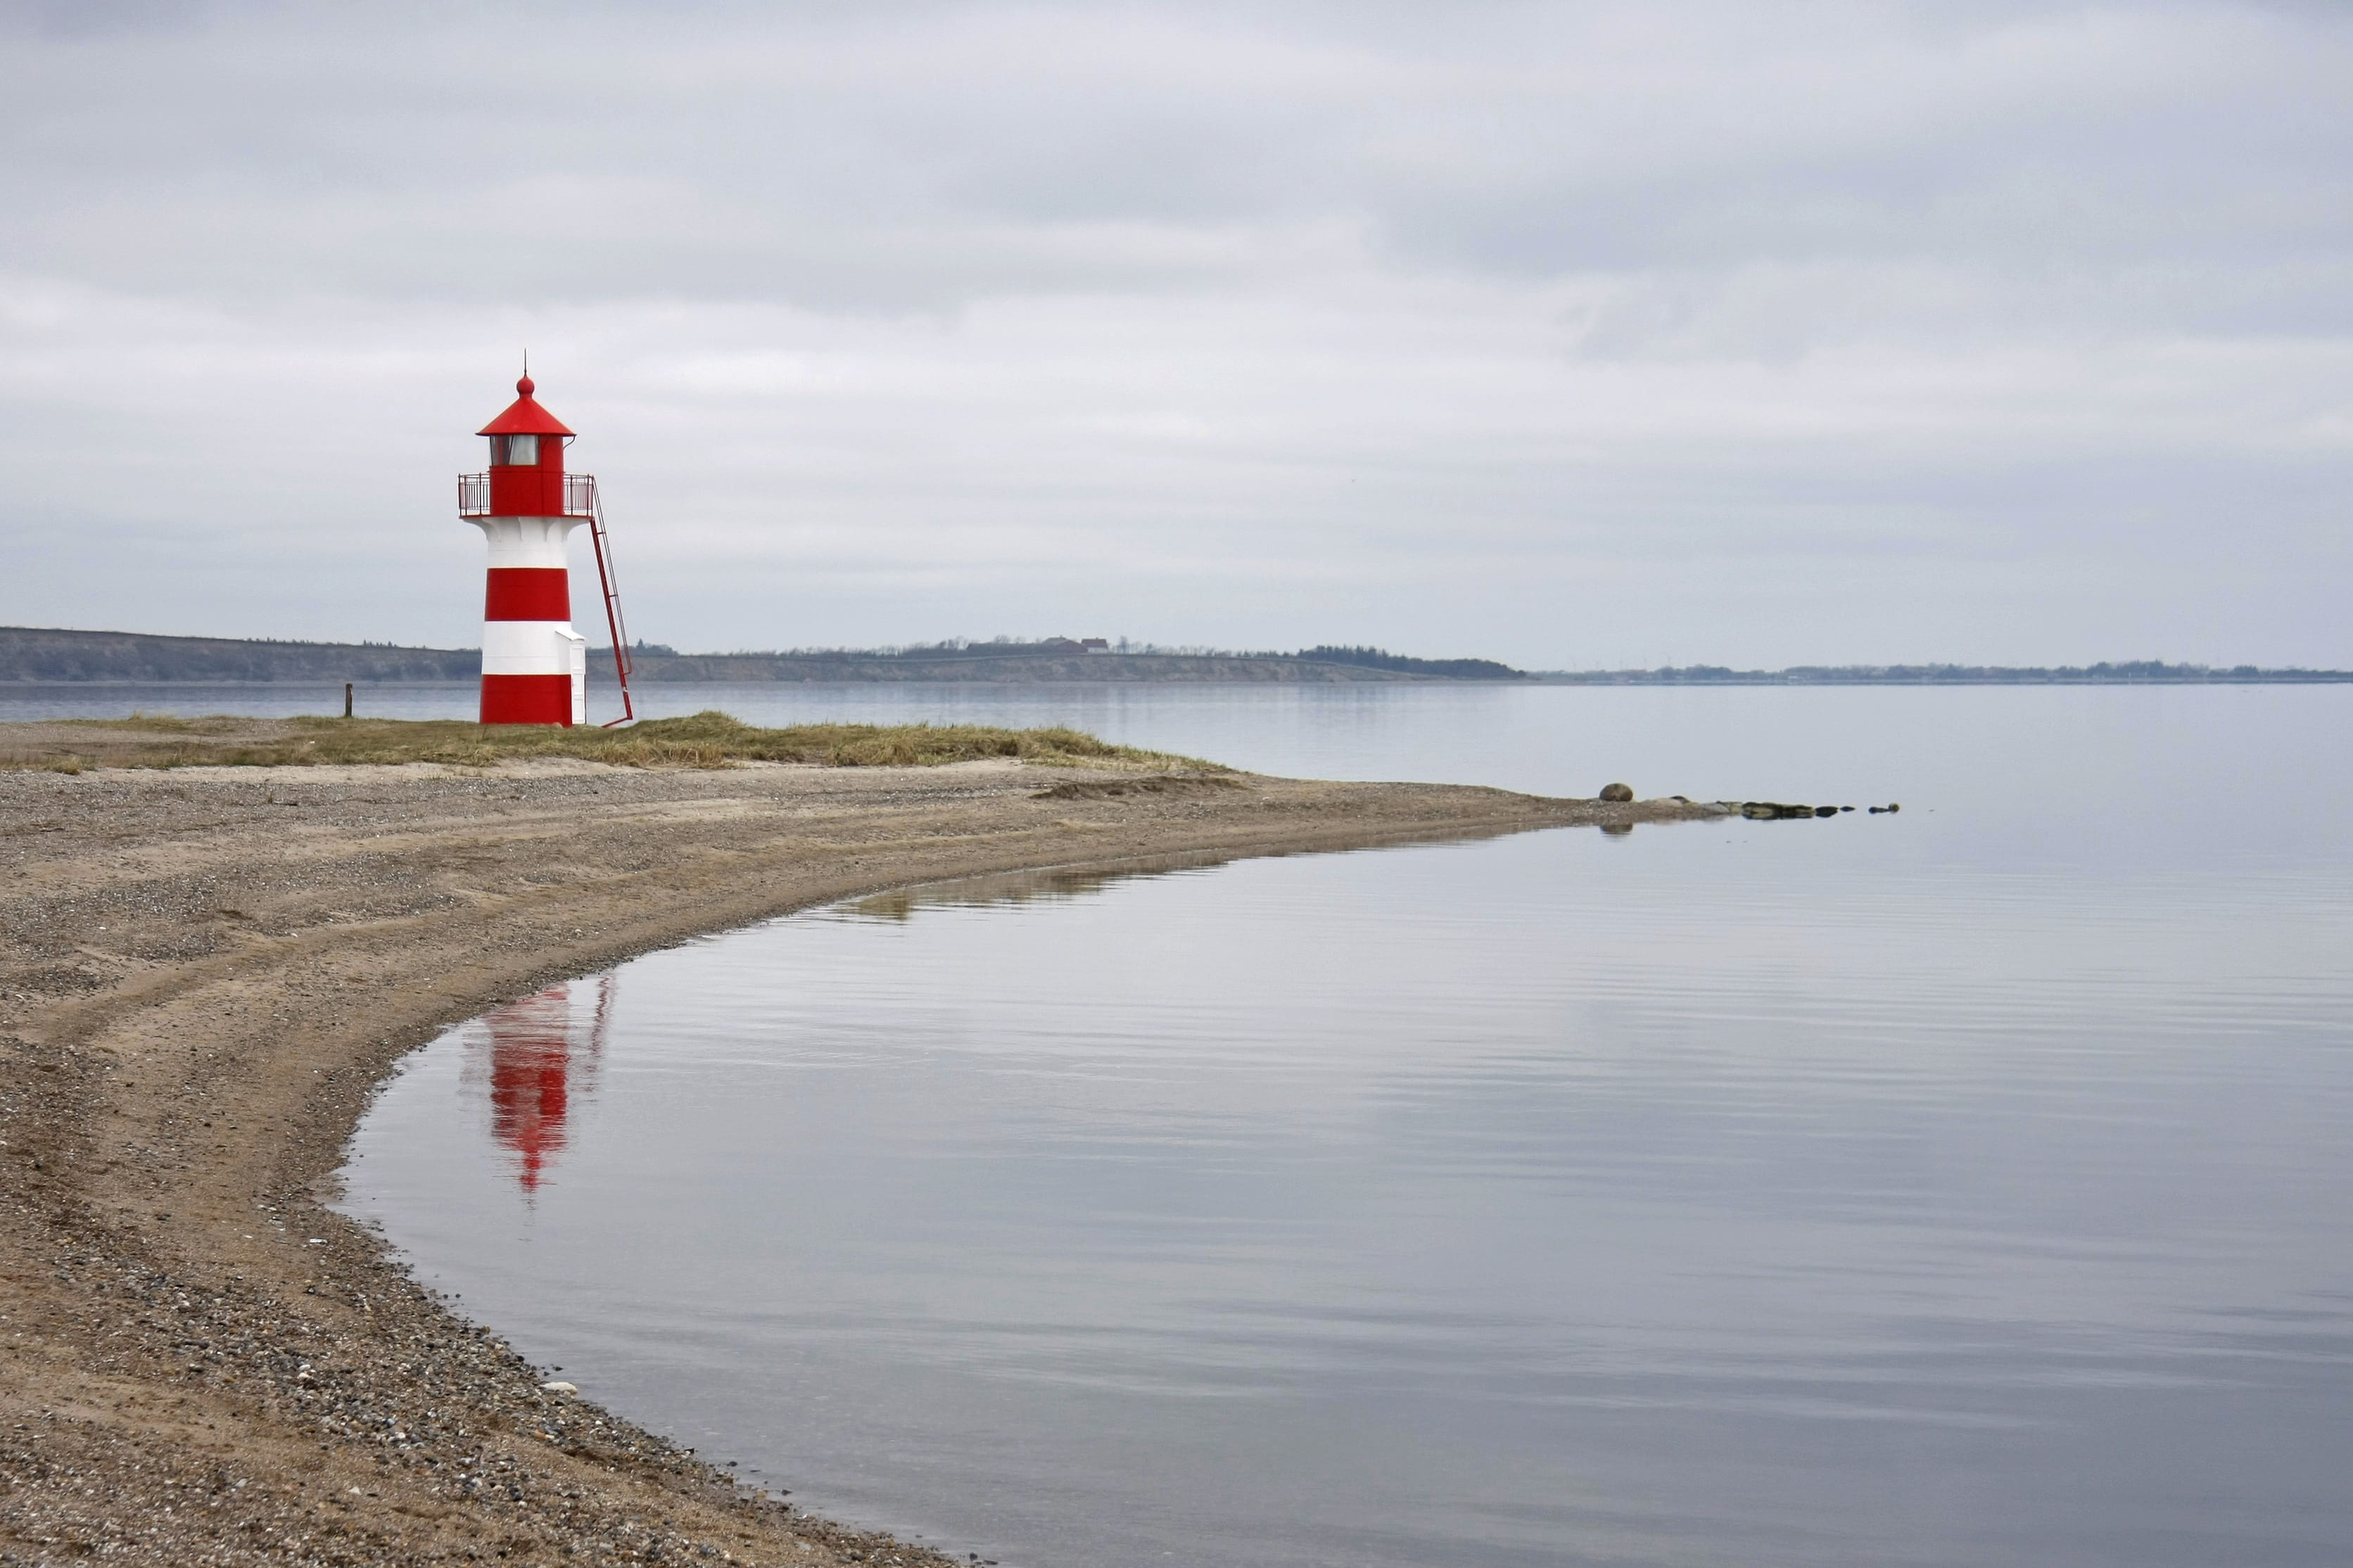 Beach, Water, Natural, Danish, guy, danish beach, lighthouse